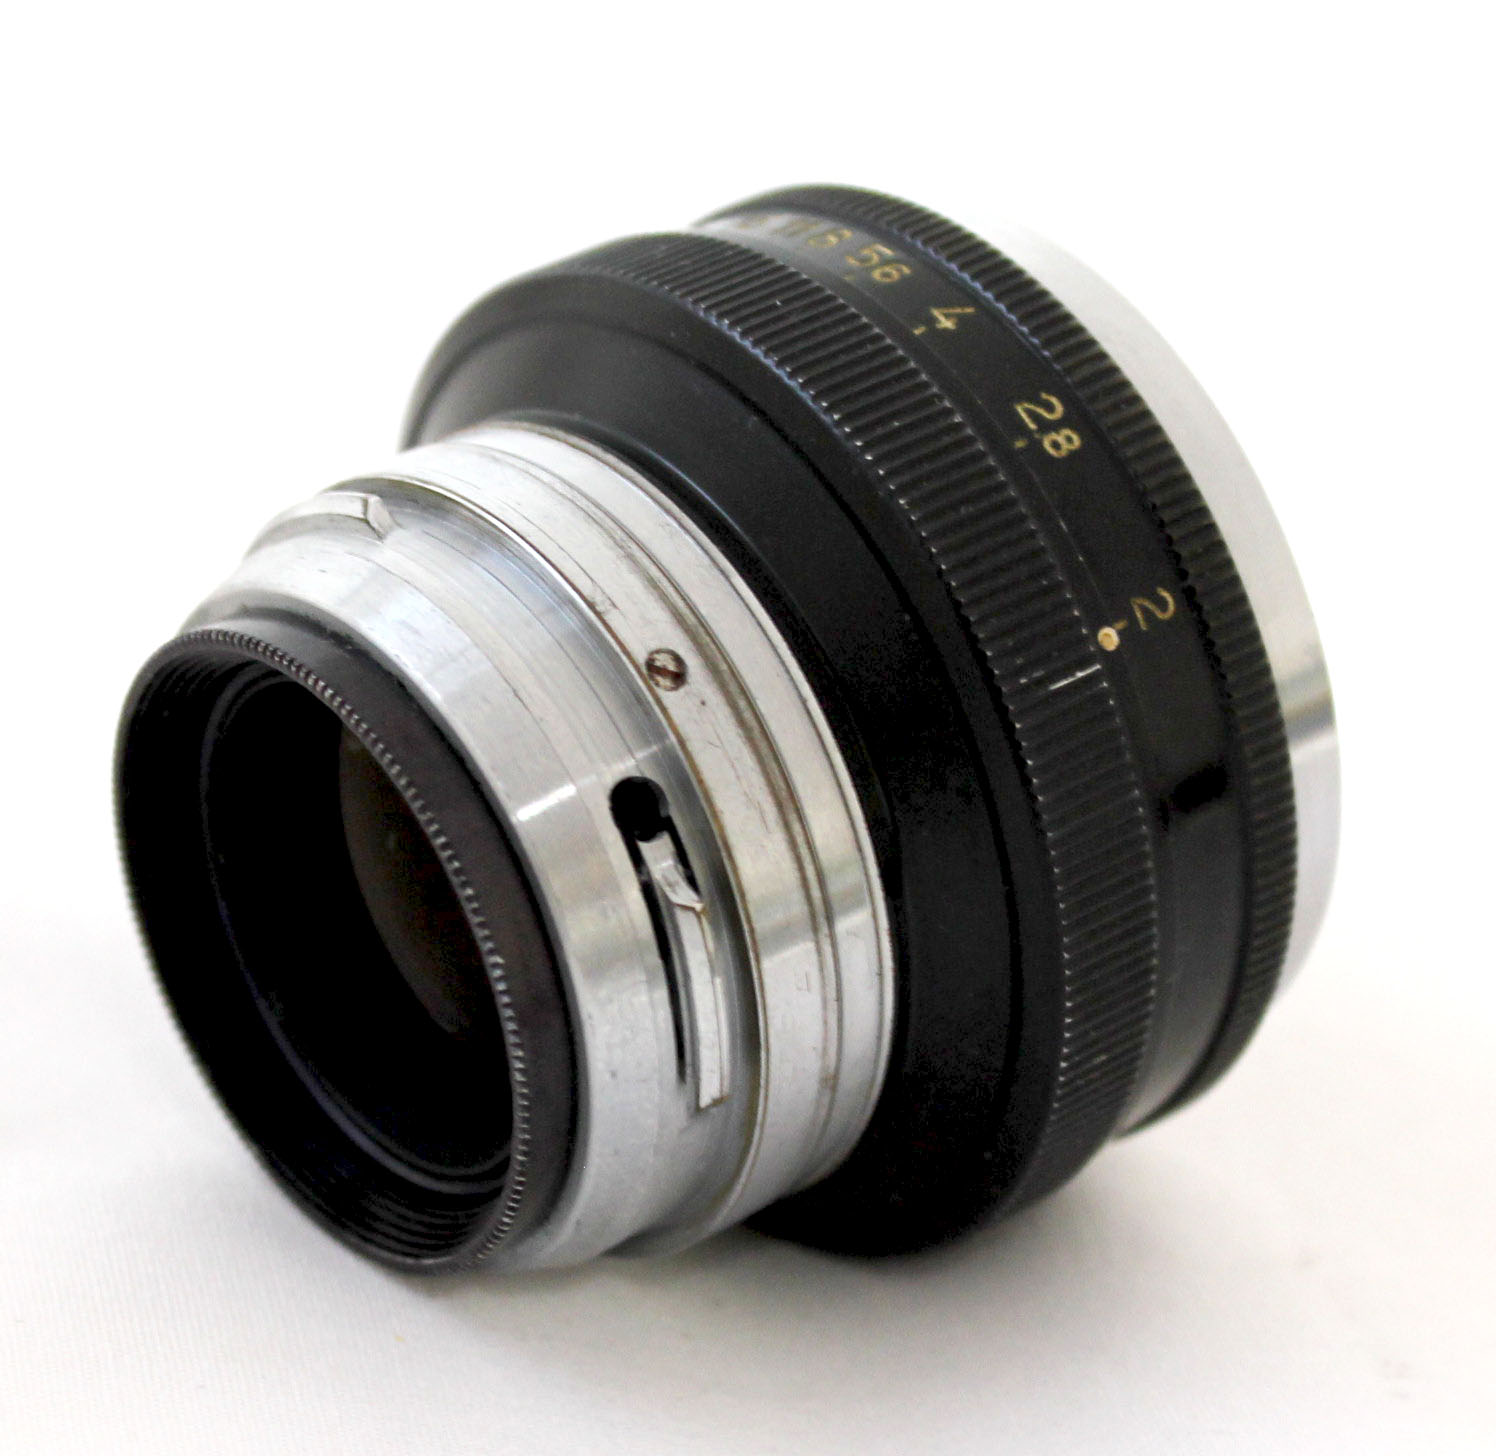  Nippon Kogaku Nikkor-H.C 5cm 50mm F/2 Lens for Nikon S Mount from Japan Photo 2